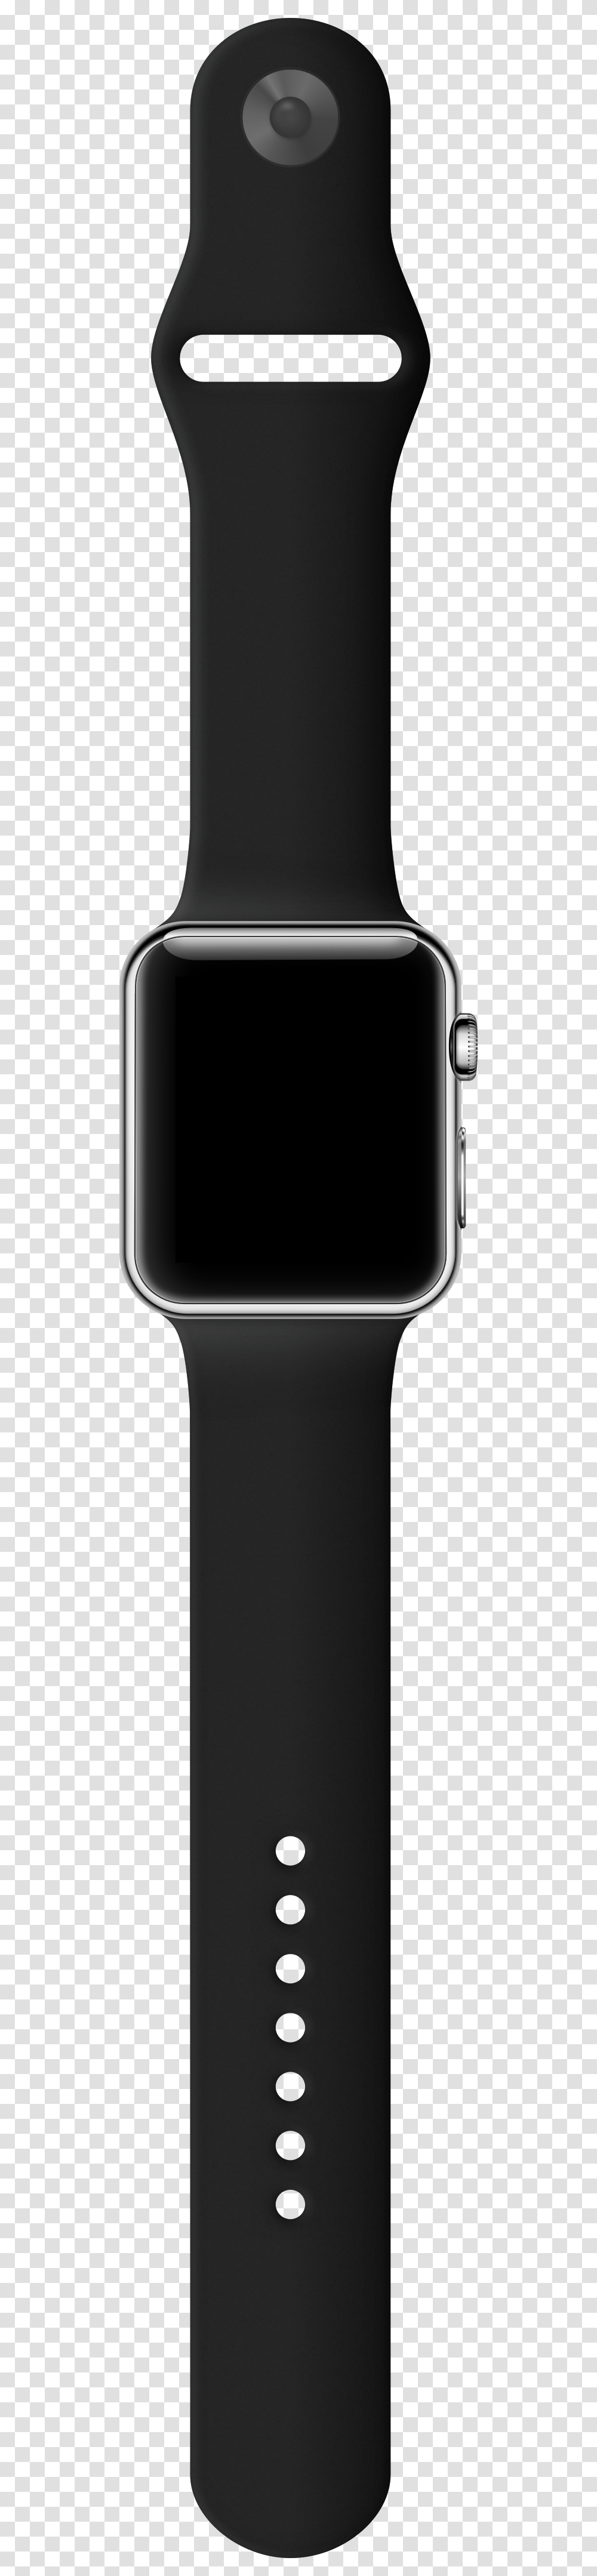 Apple Watch Open Band, Wristwatch, Digital Watch Transparent Png